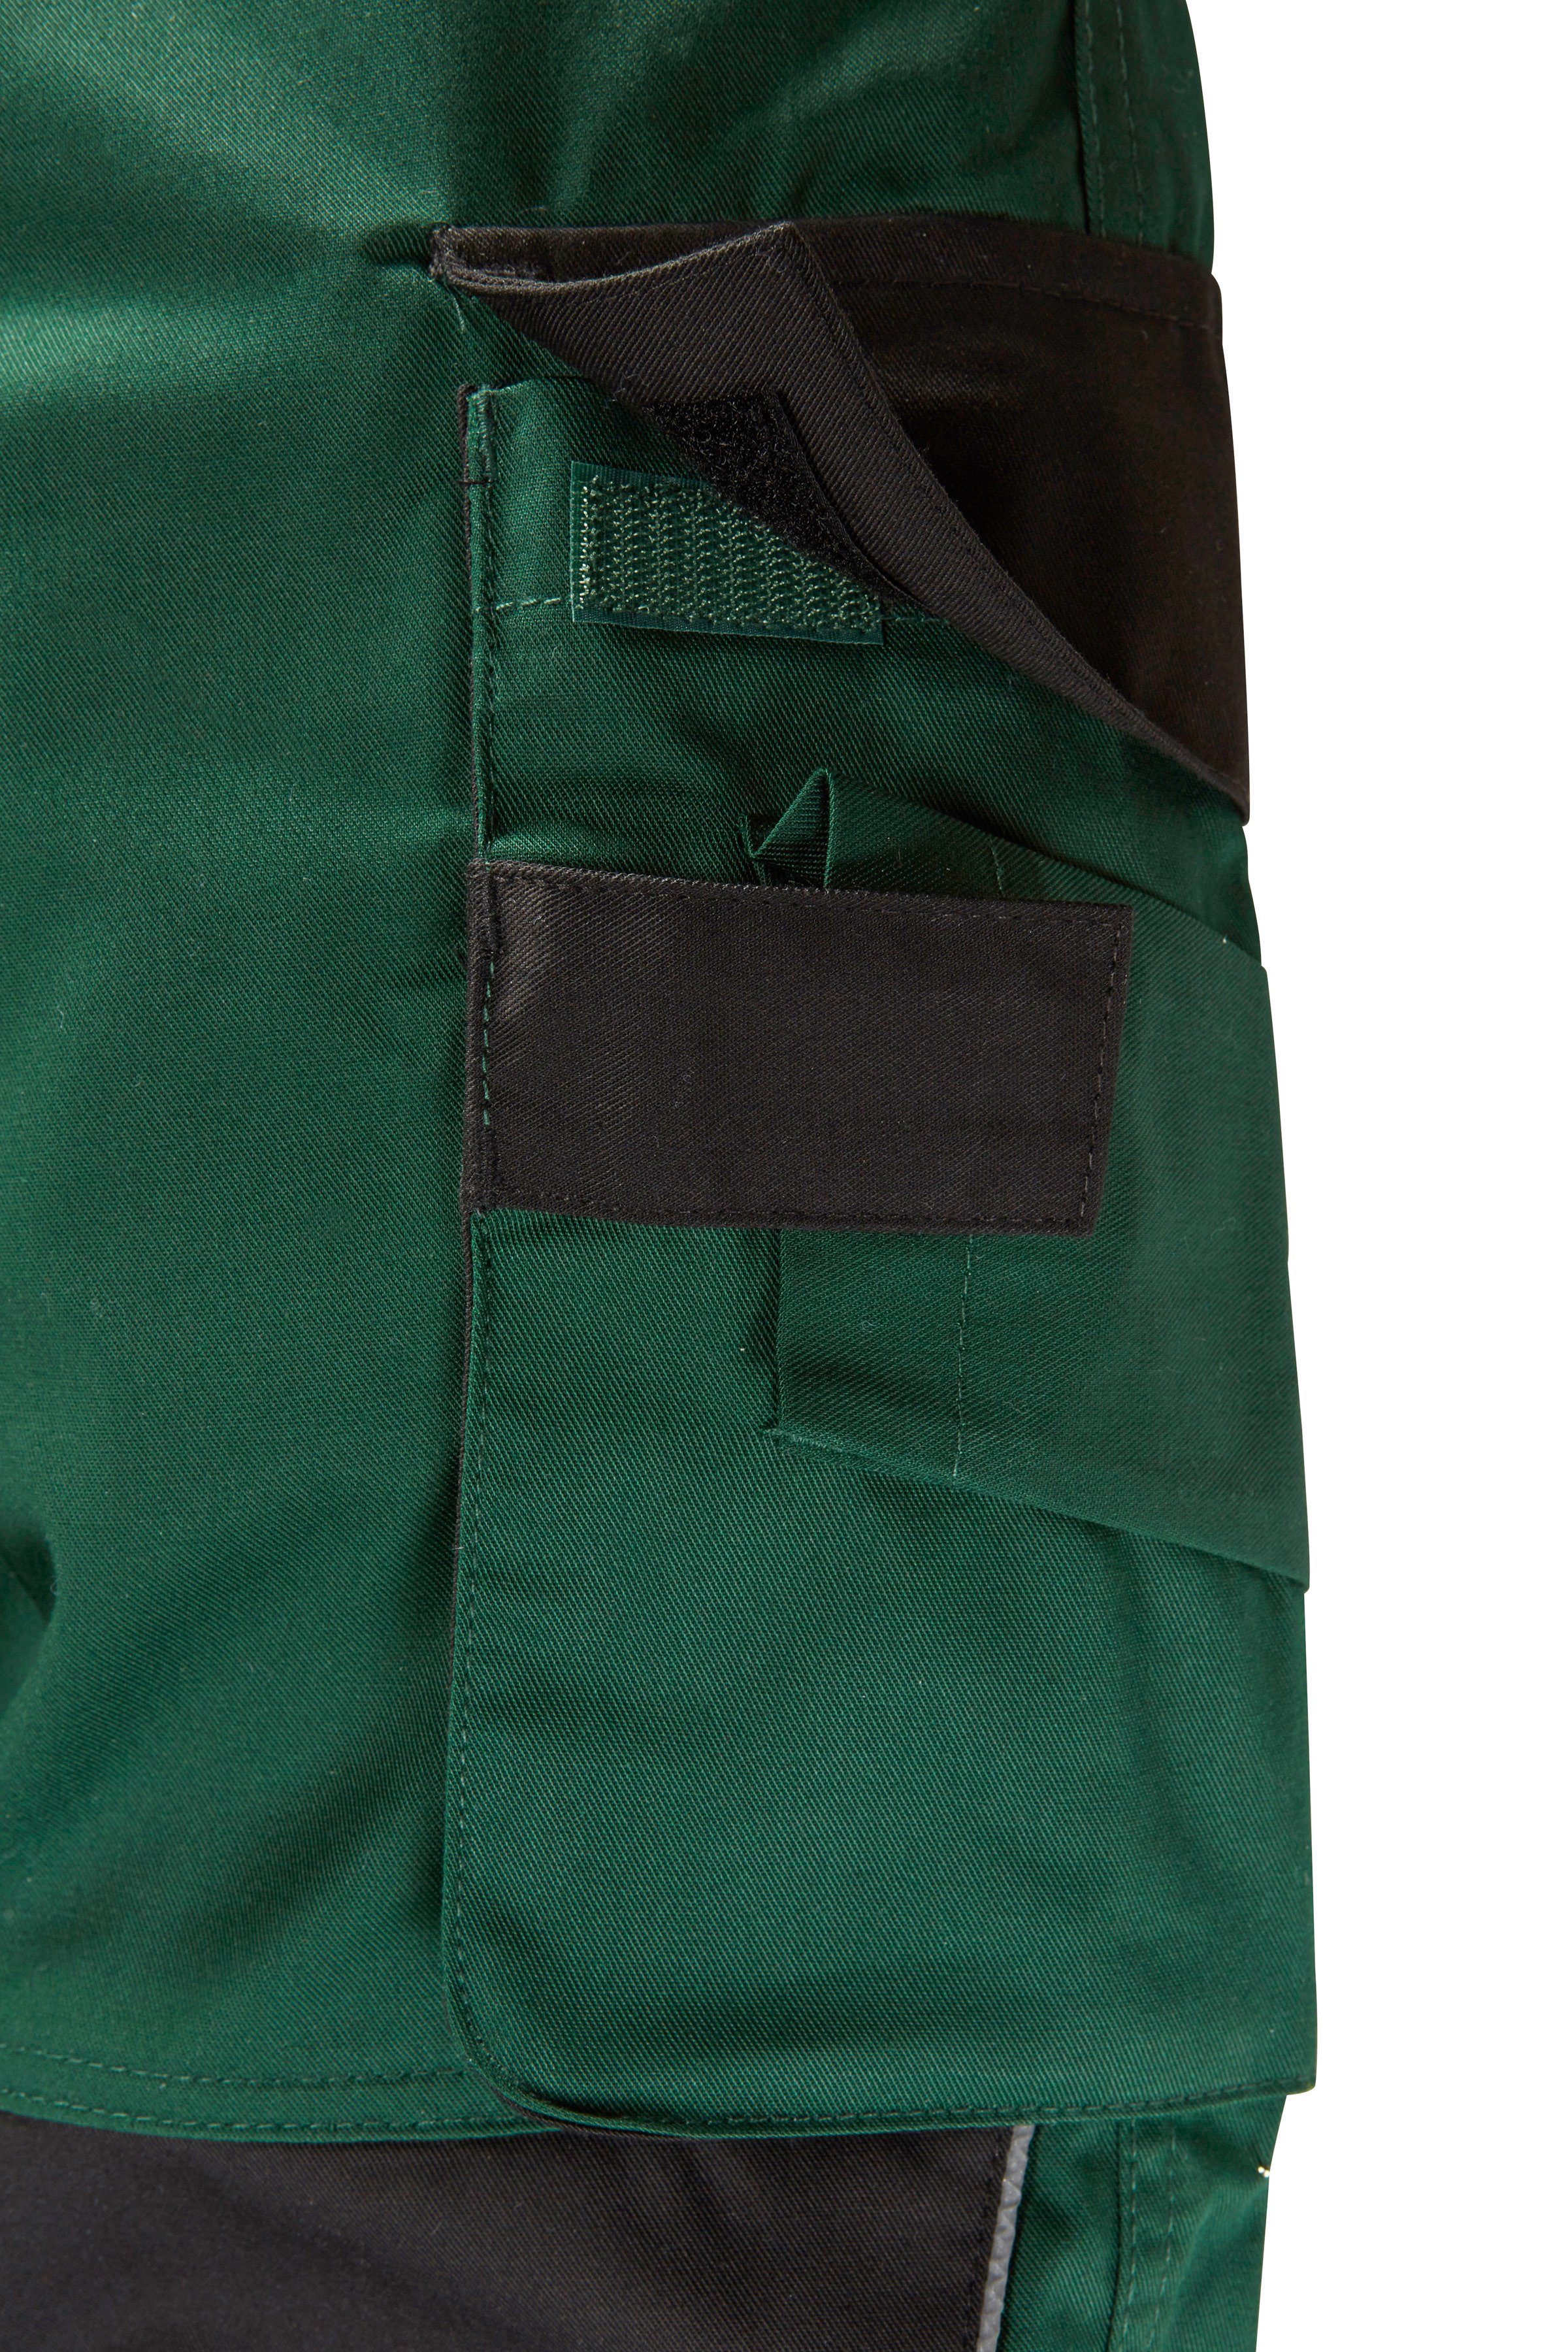 Pull Knieverstärkung mit safety& Arbeitshose more grün-schwarz